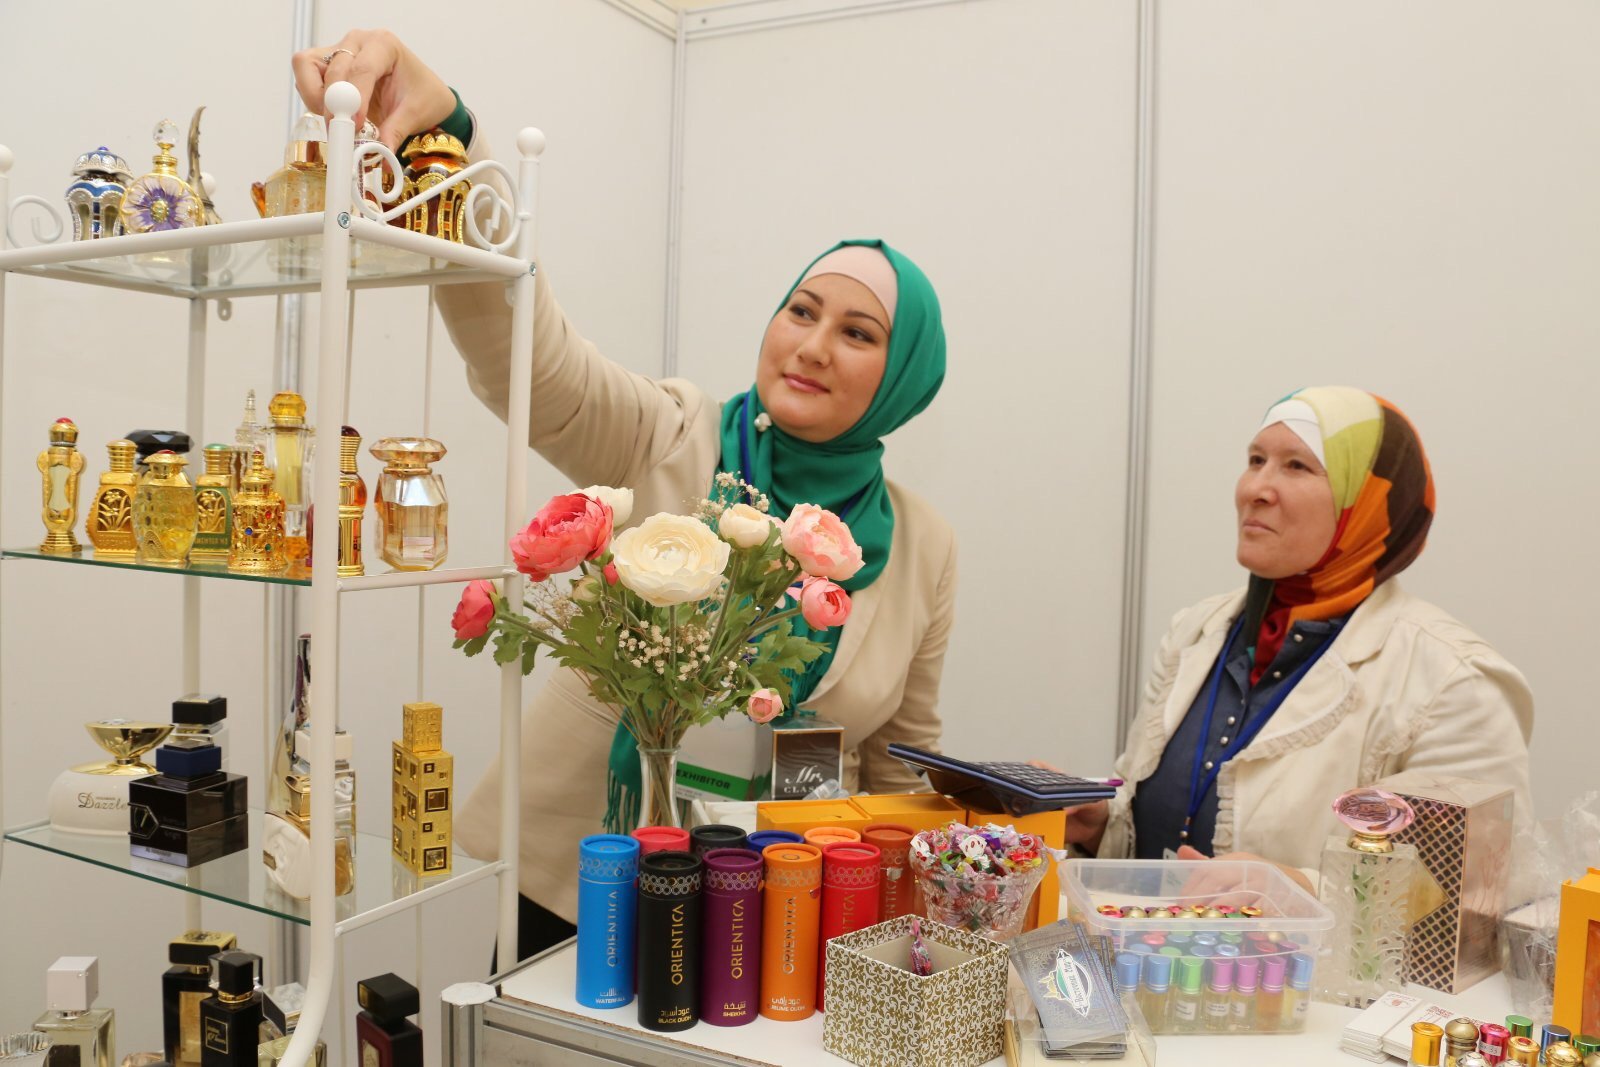  Самаре открылась международная выставка в рамках экономического форума World Halal Day